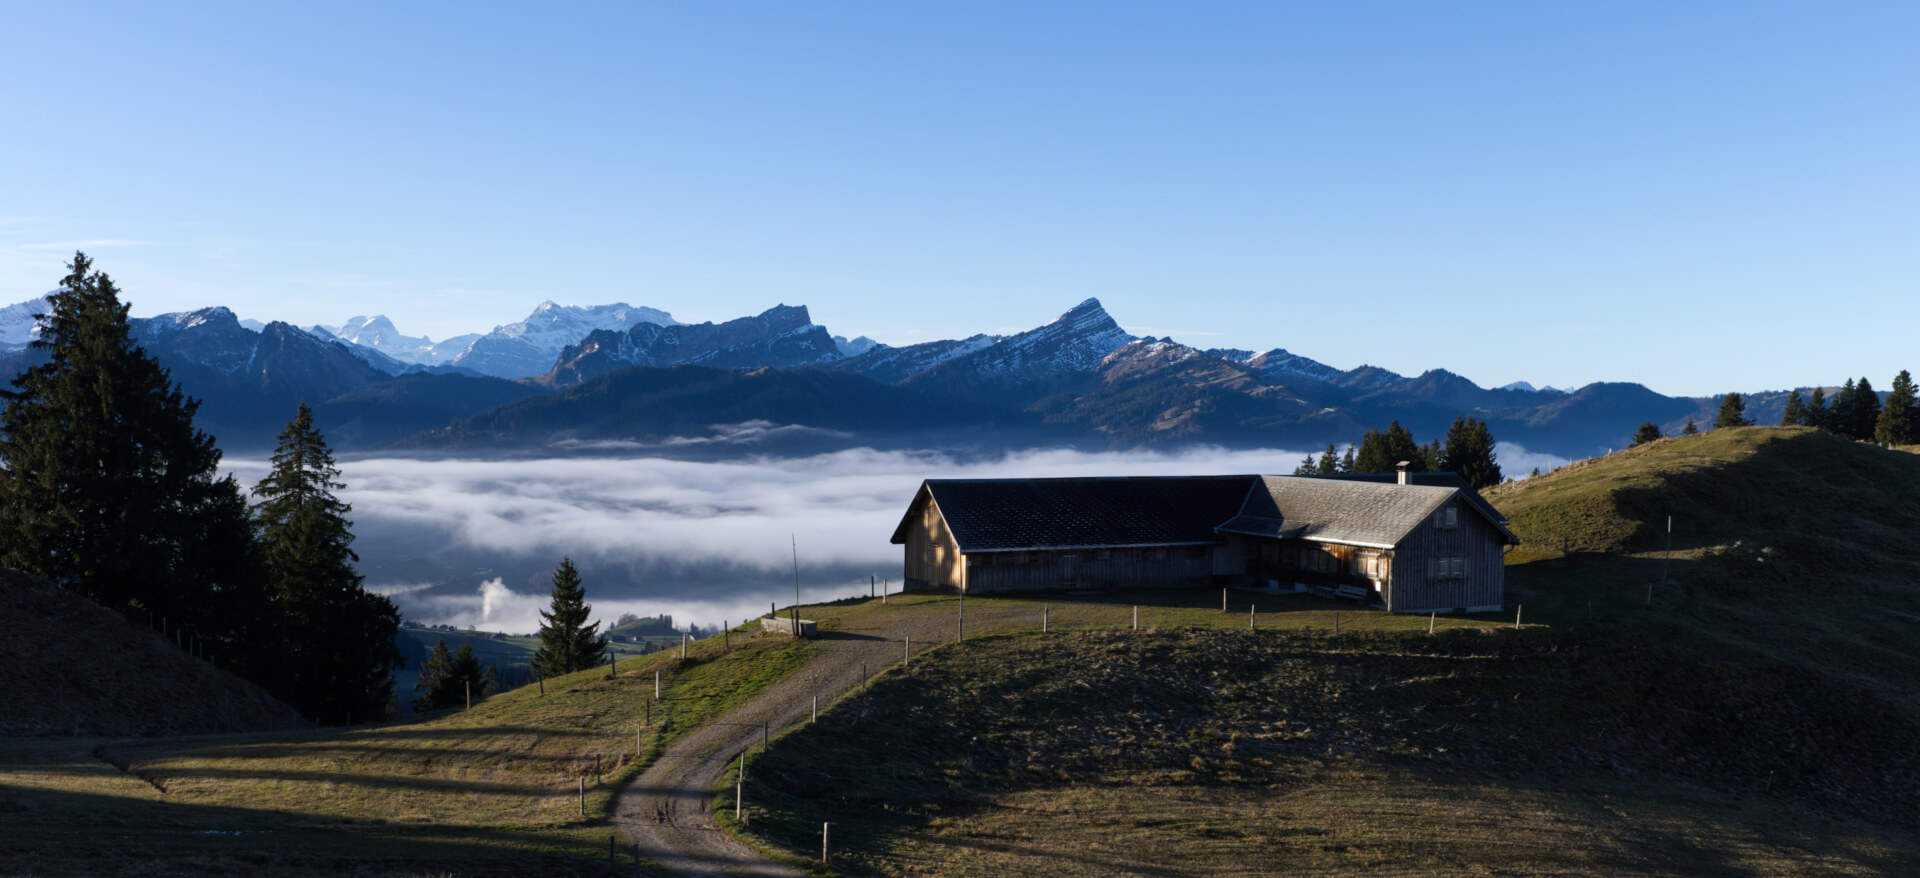 Alp vor Nebel und Speer